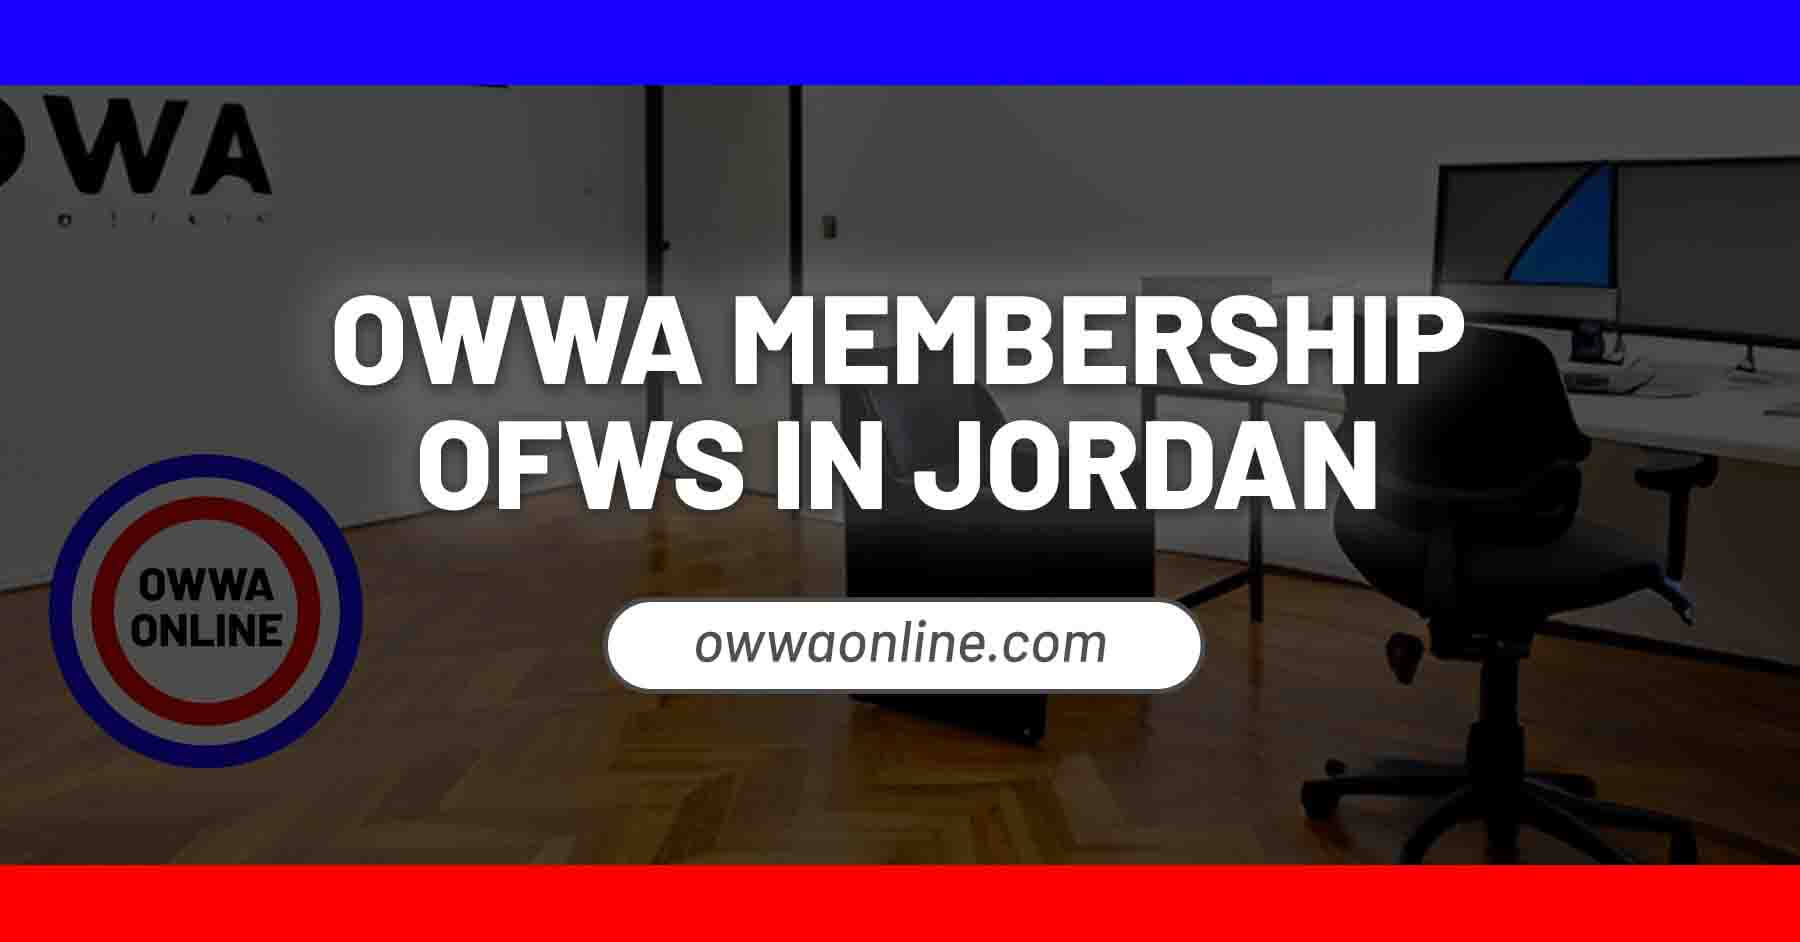 owwa membership application renewal in jordan